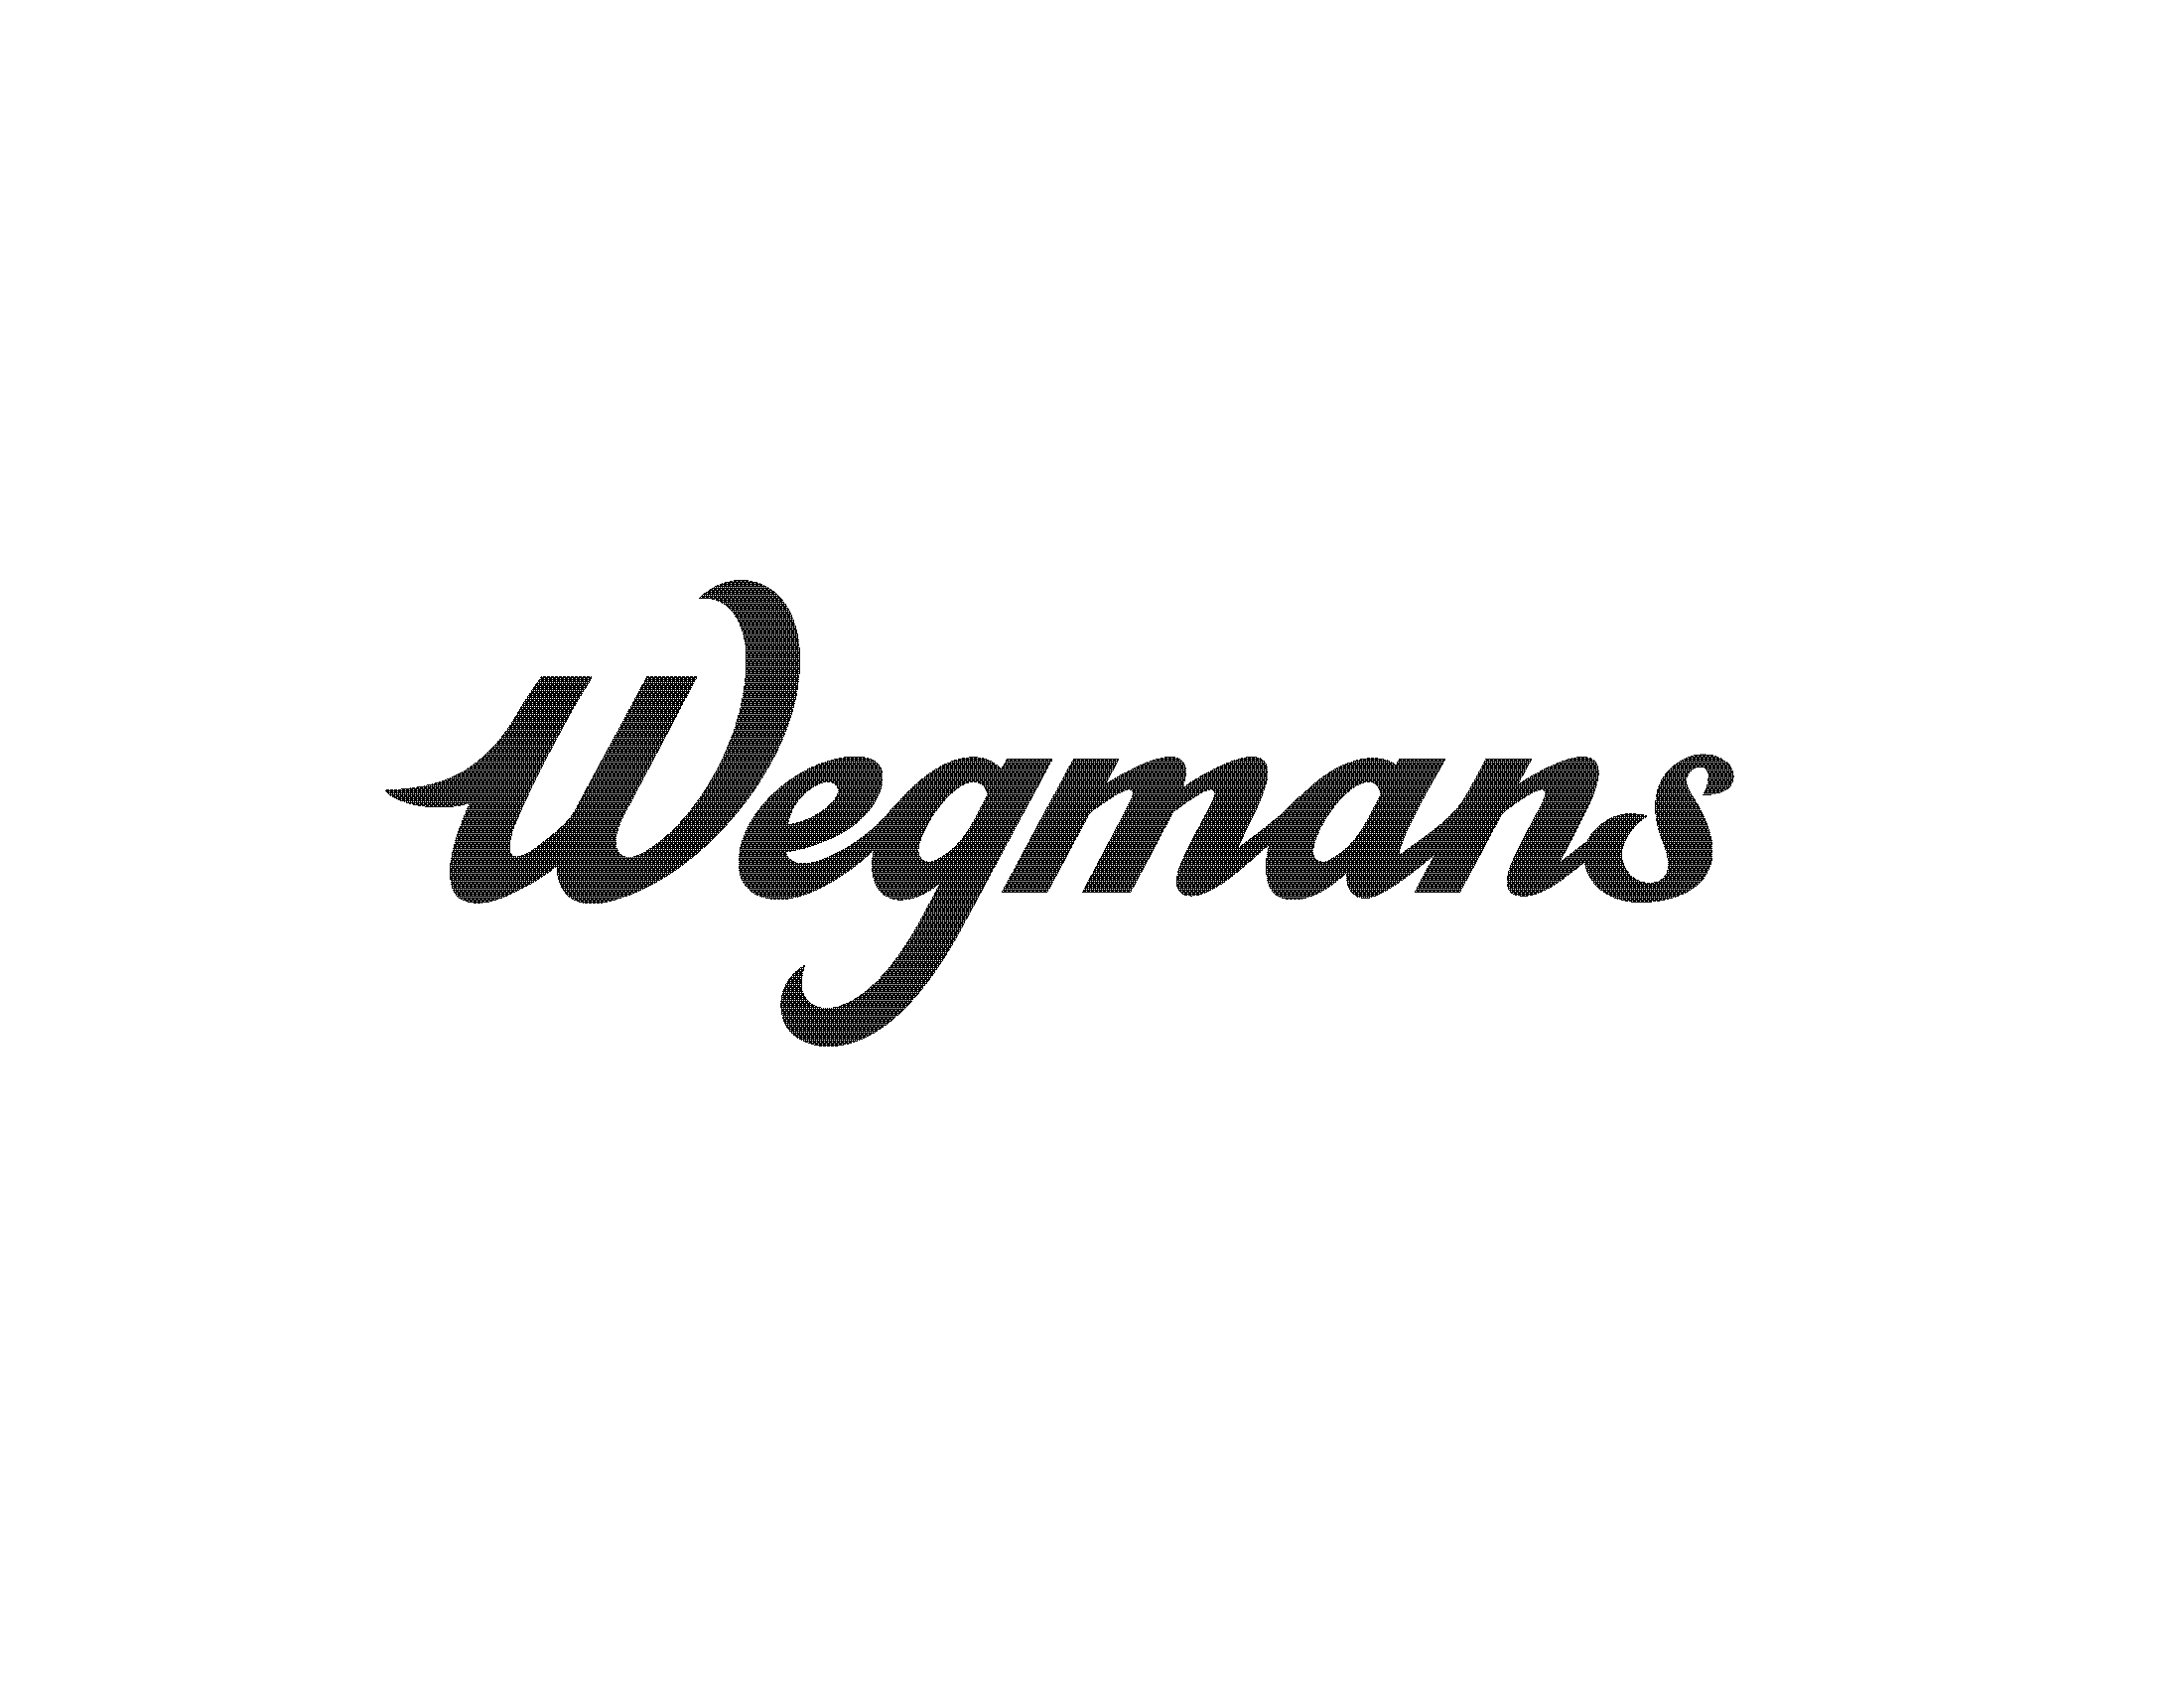 Wegmans